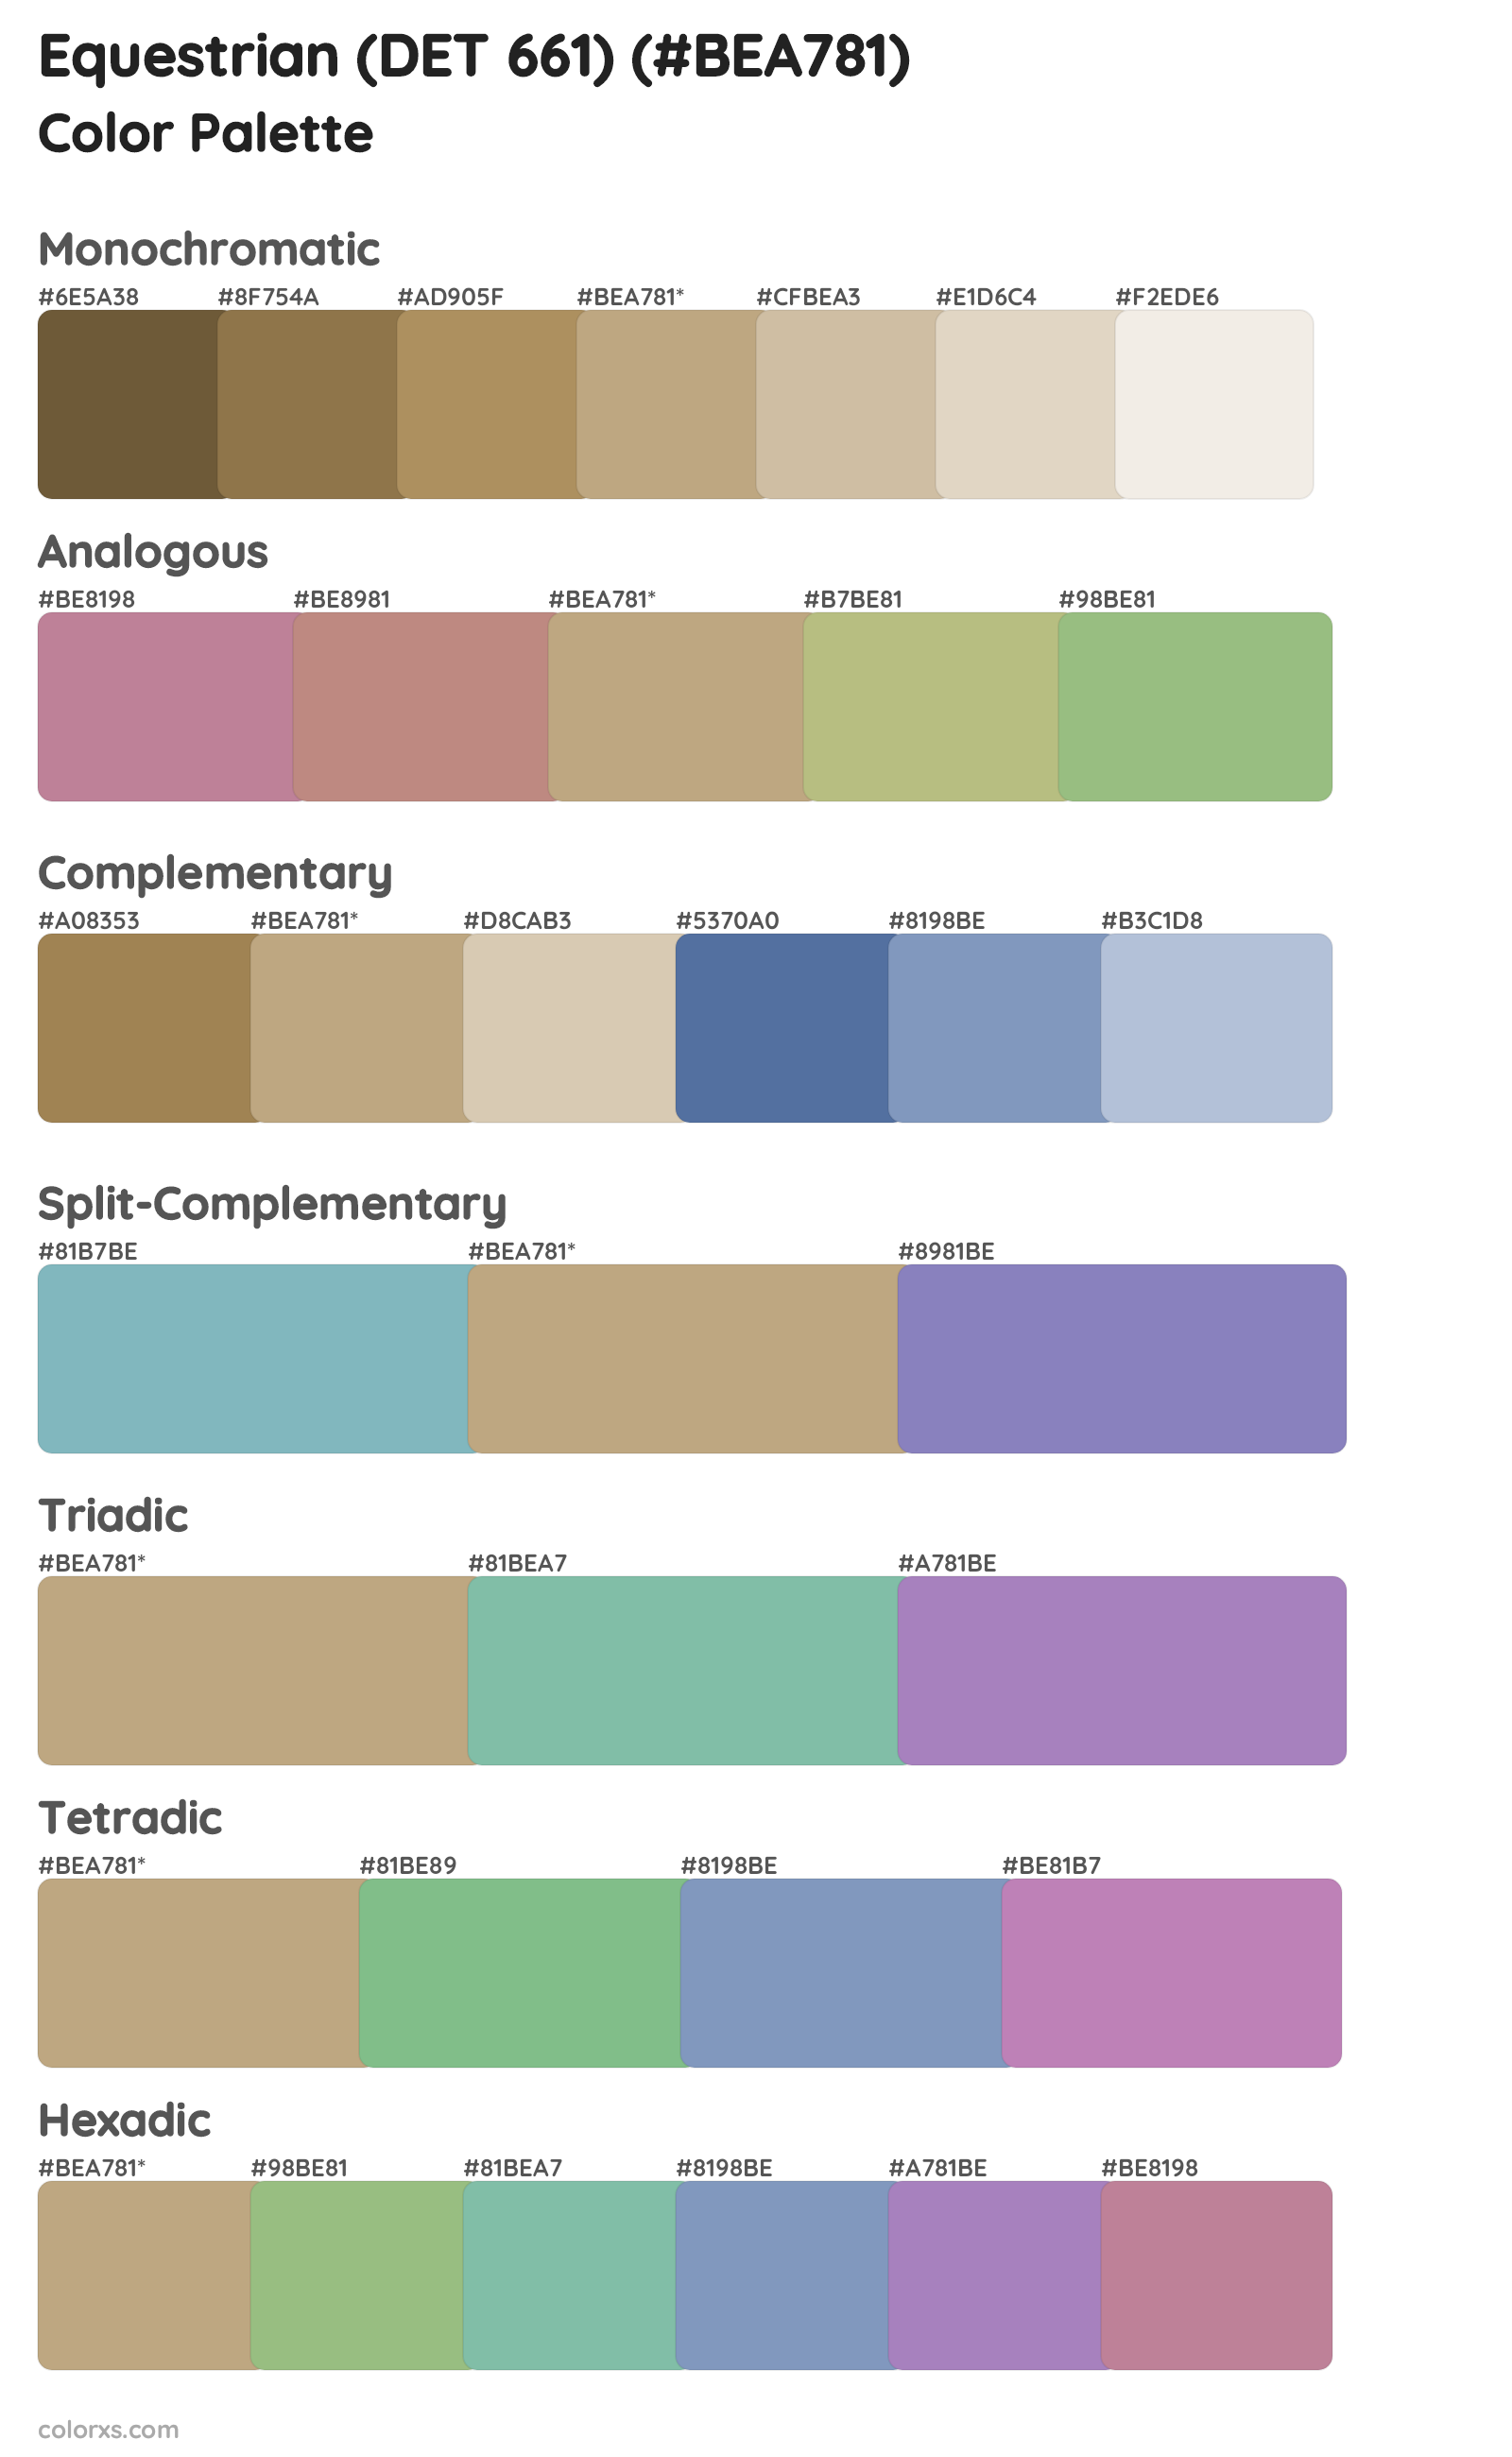 Equestrian (DET 661) Color Scheme Palettes